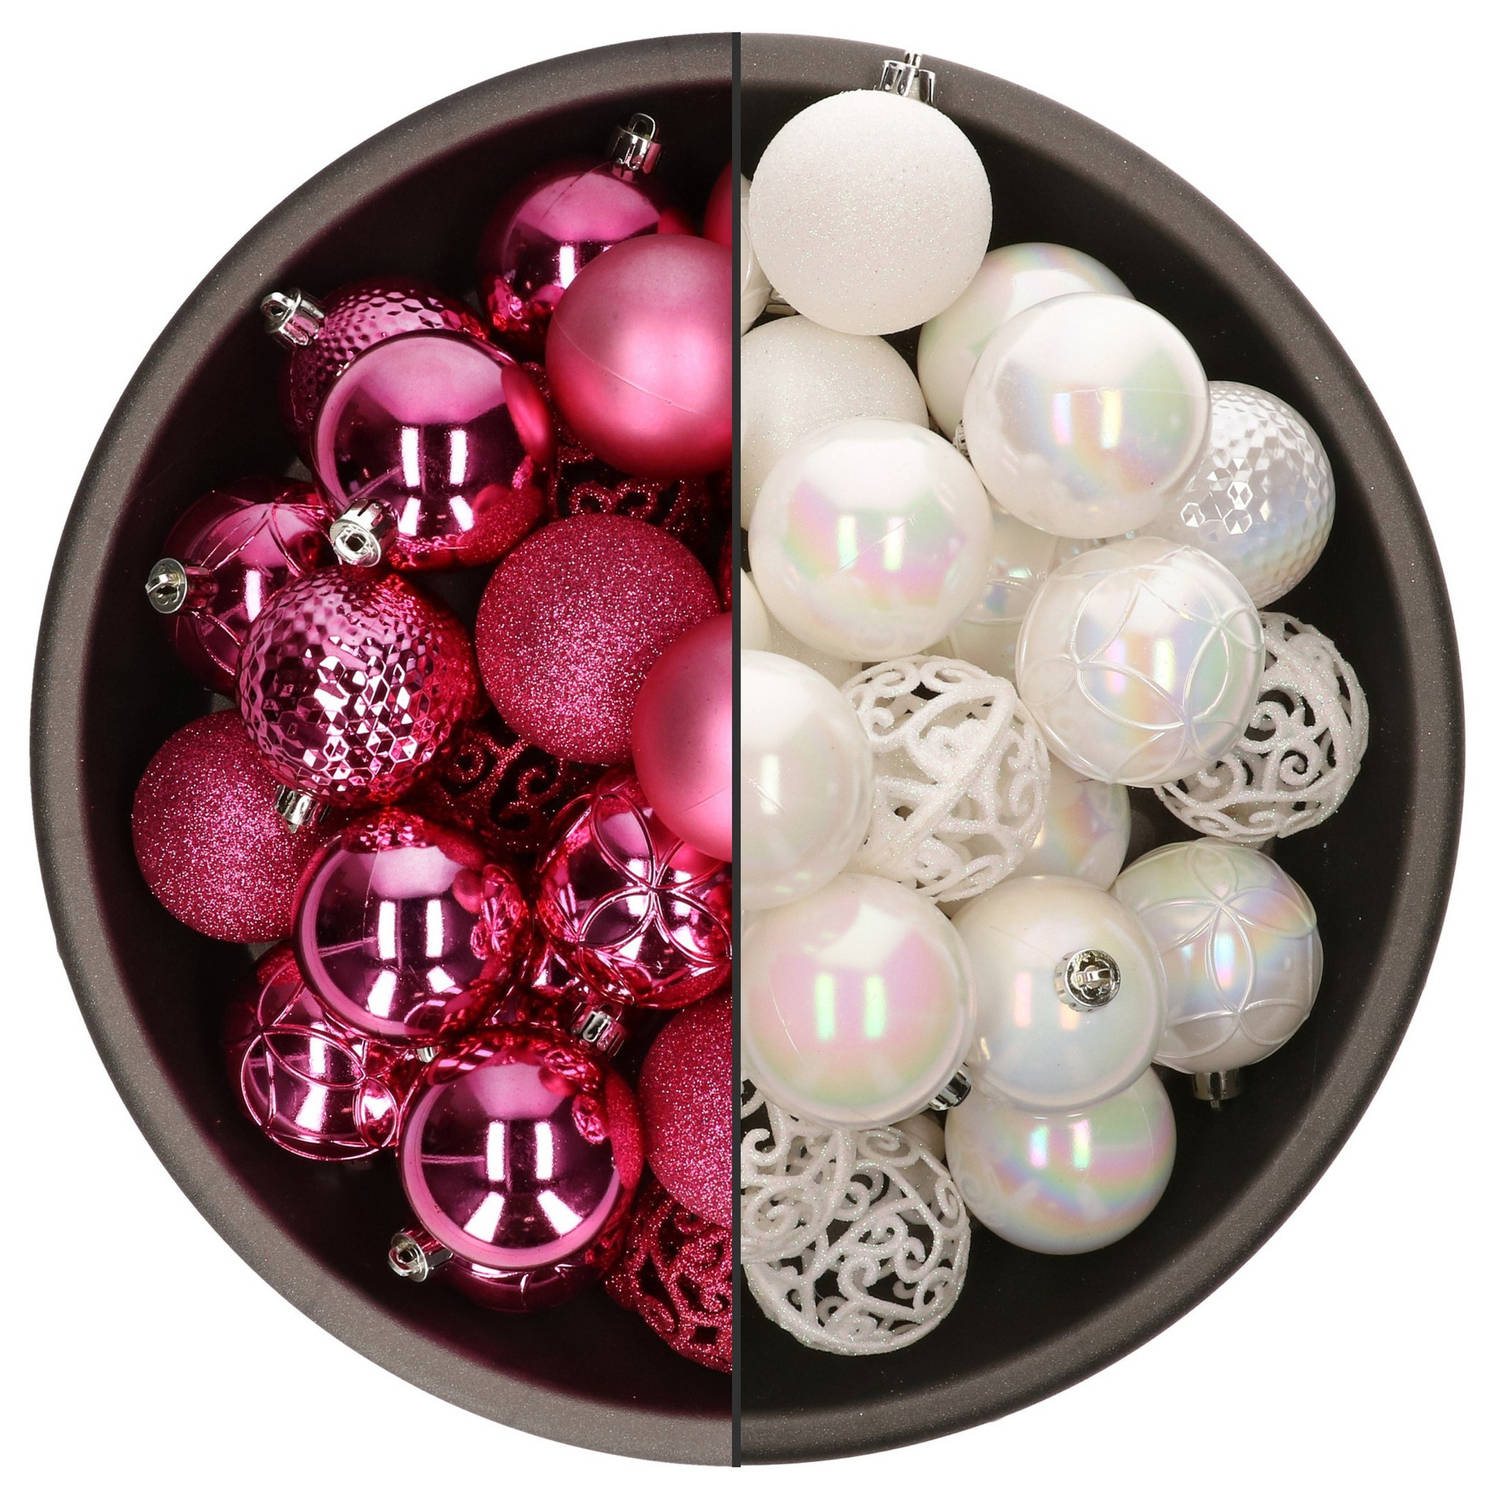 74x stuks kunststof kerstballen mix van fuchsia roze en parelmoer wit 6 cm - Kerstbal